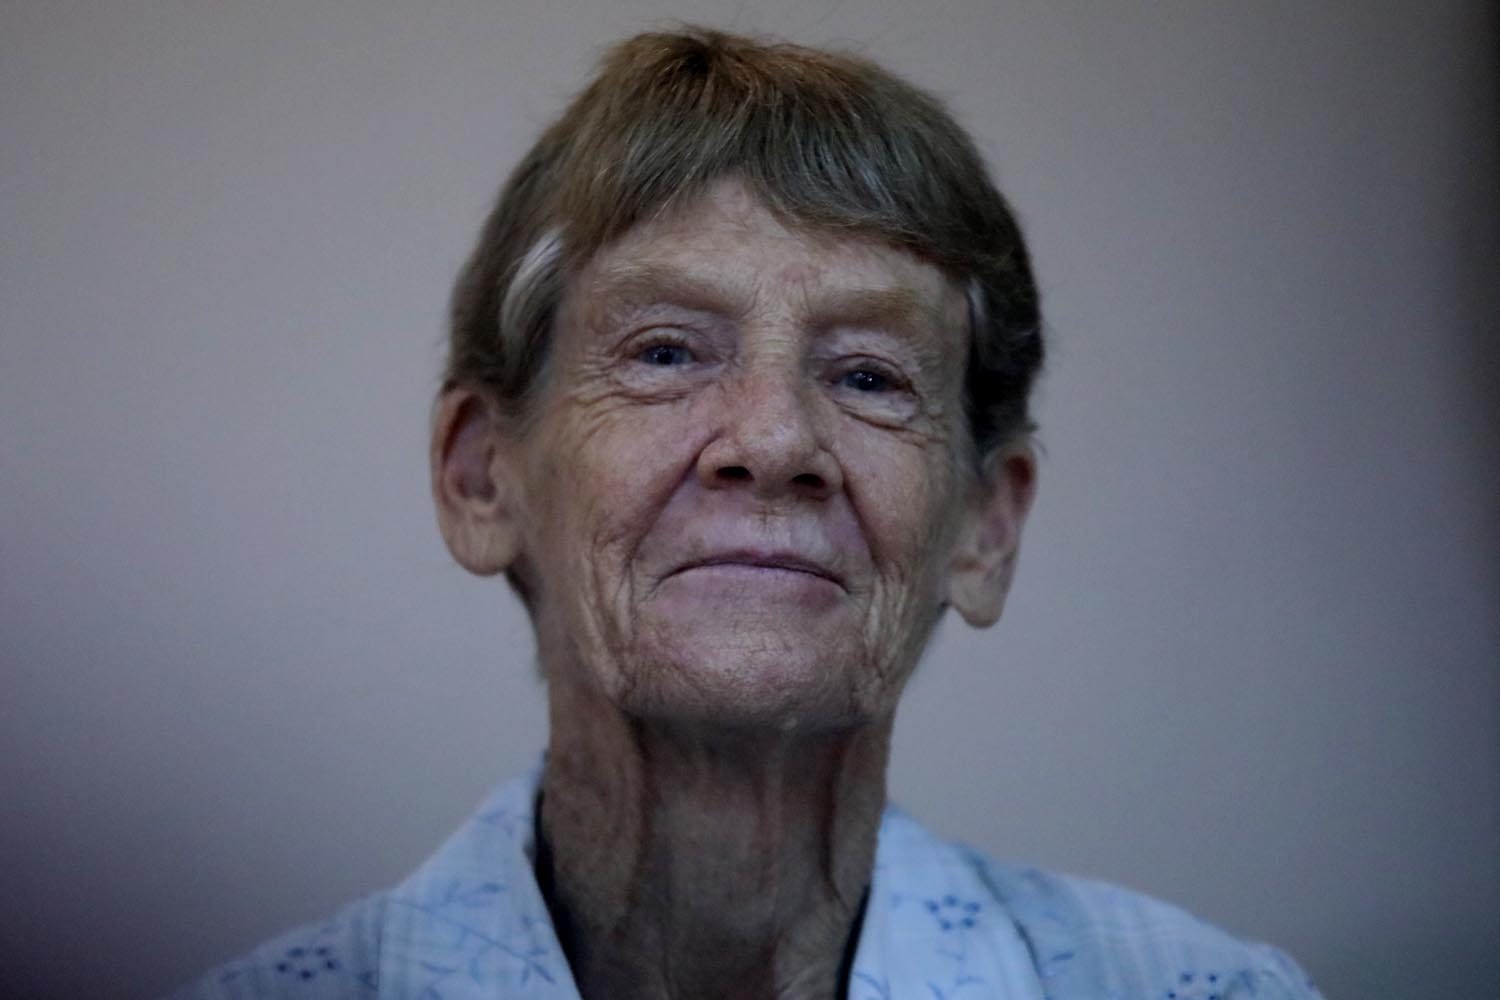 ‘I’ll come back’: Australian nun defiant over expulsion